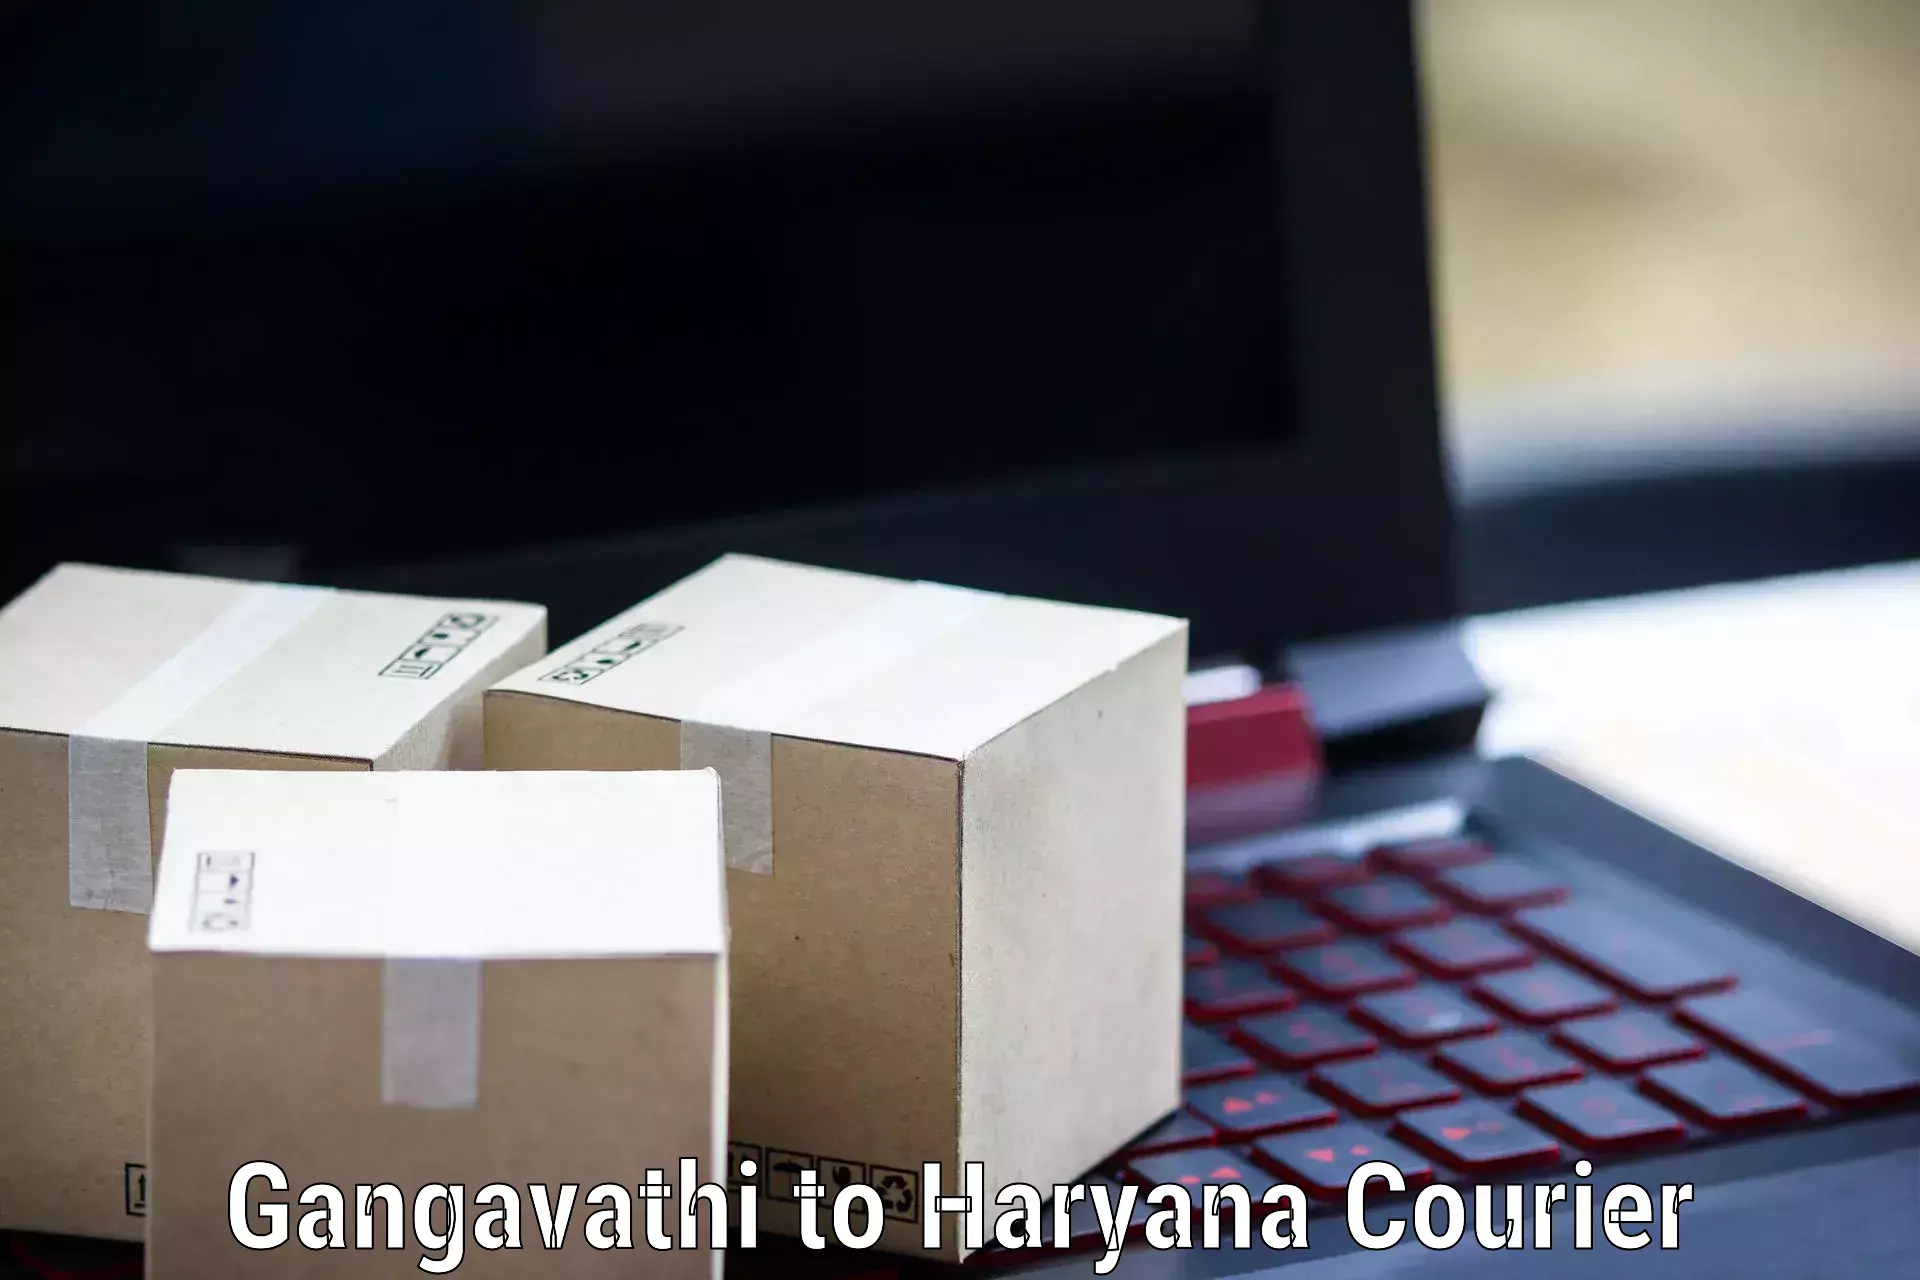 Reliable delivery network Gangavathi to Barwala